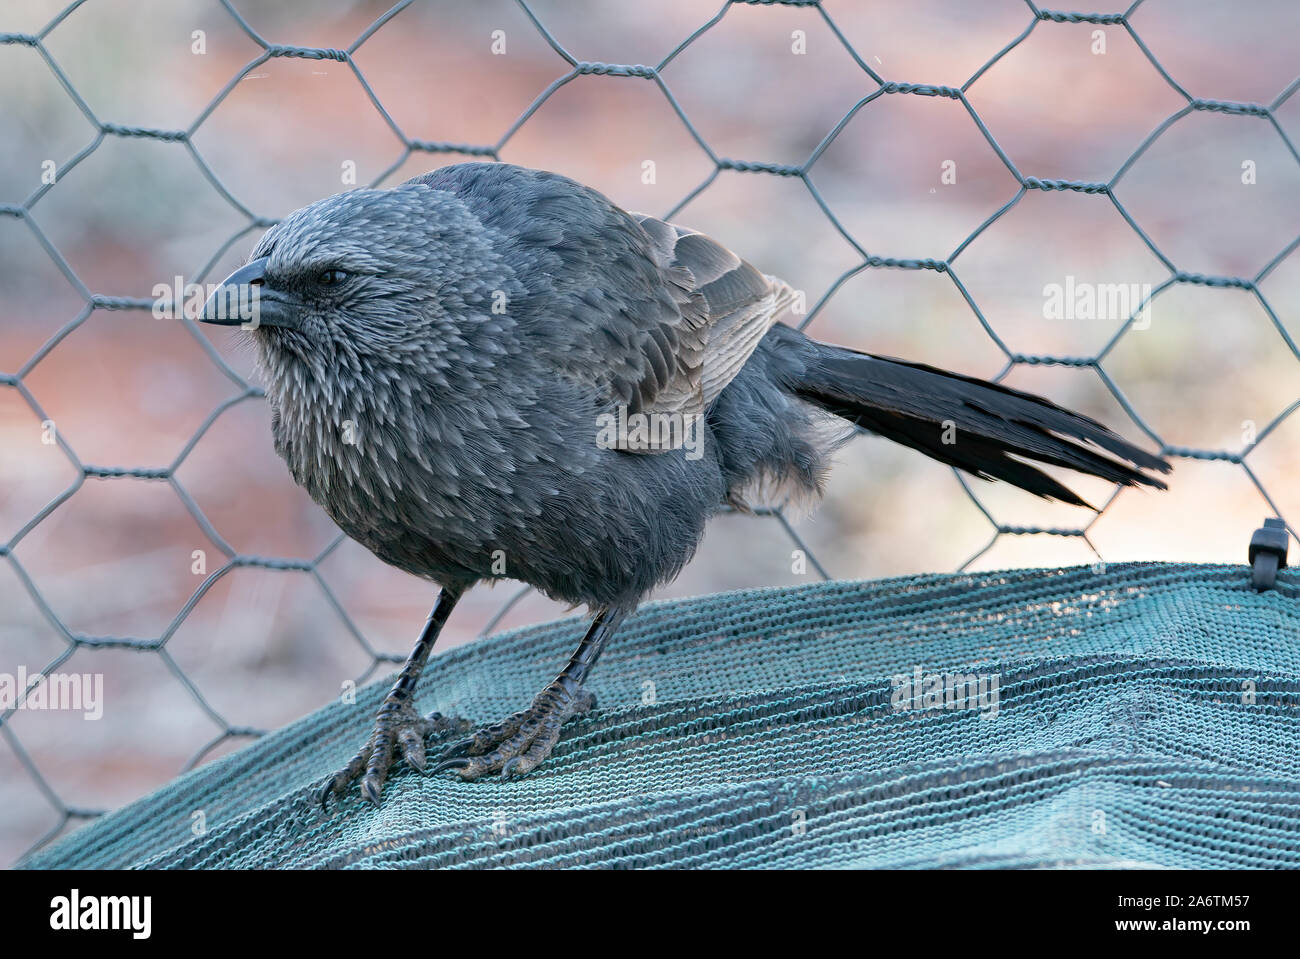 Closeup of a grumpy looking Apostle Bird , one of a flock feeding in a garden Stock Photo